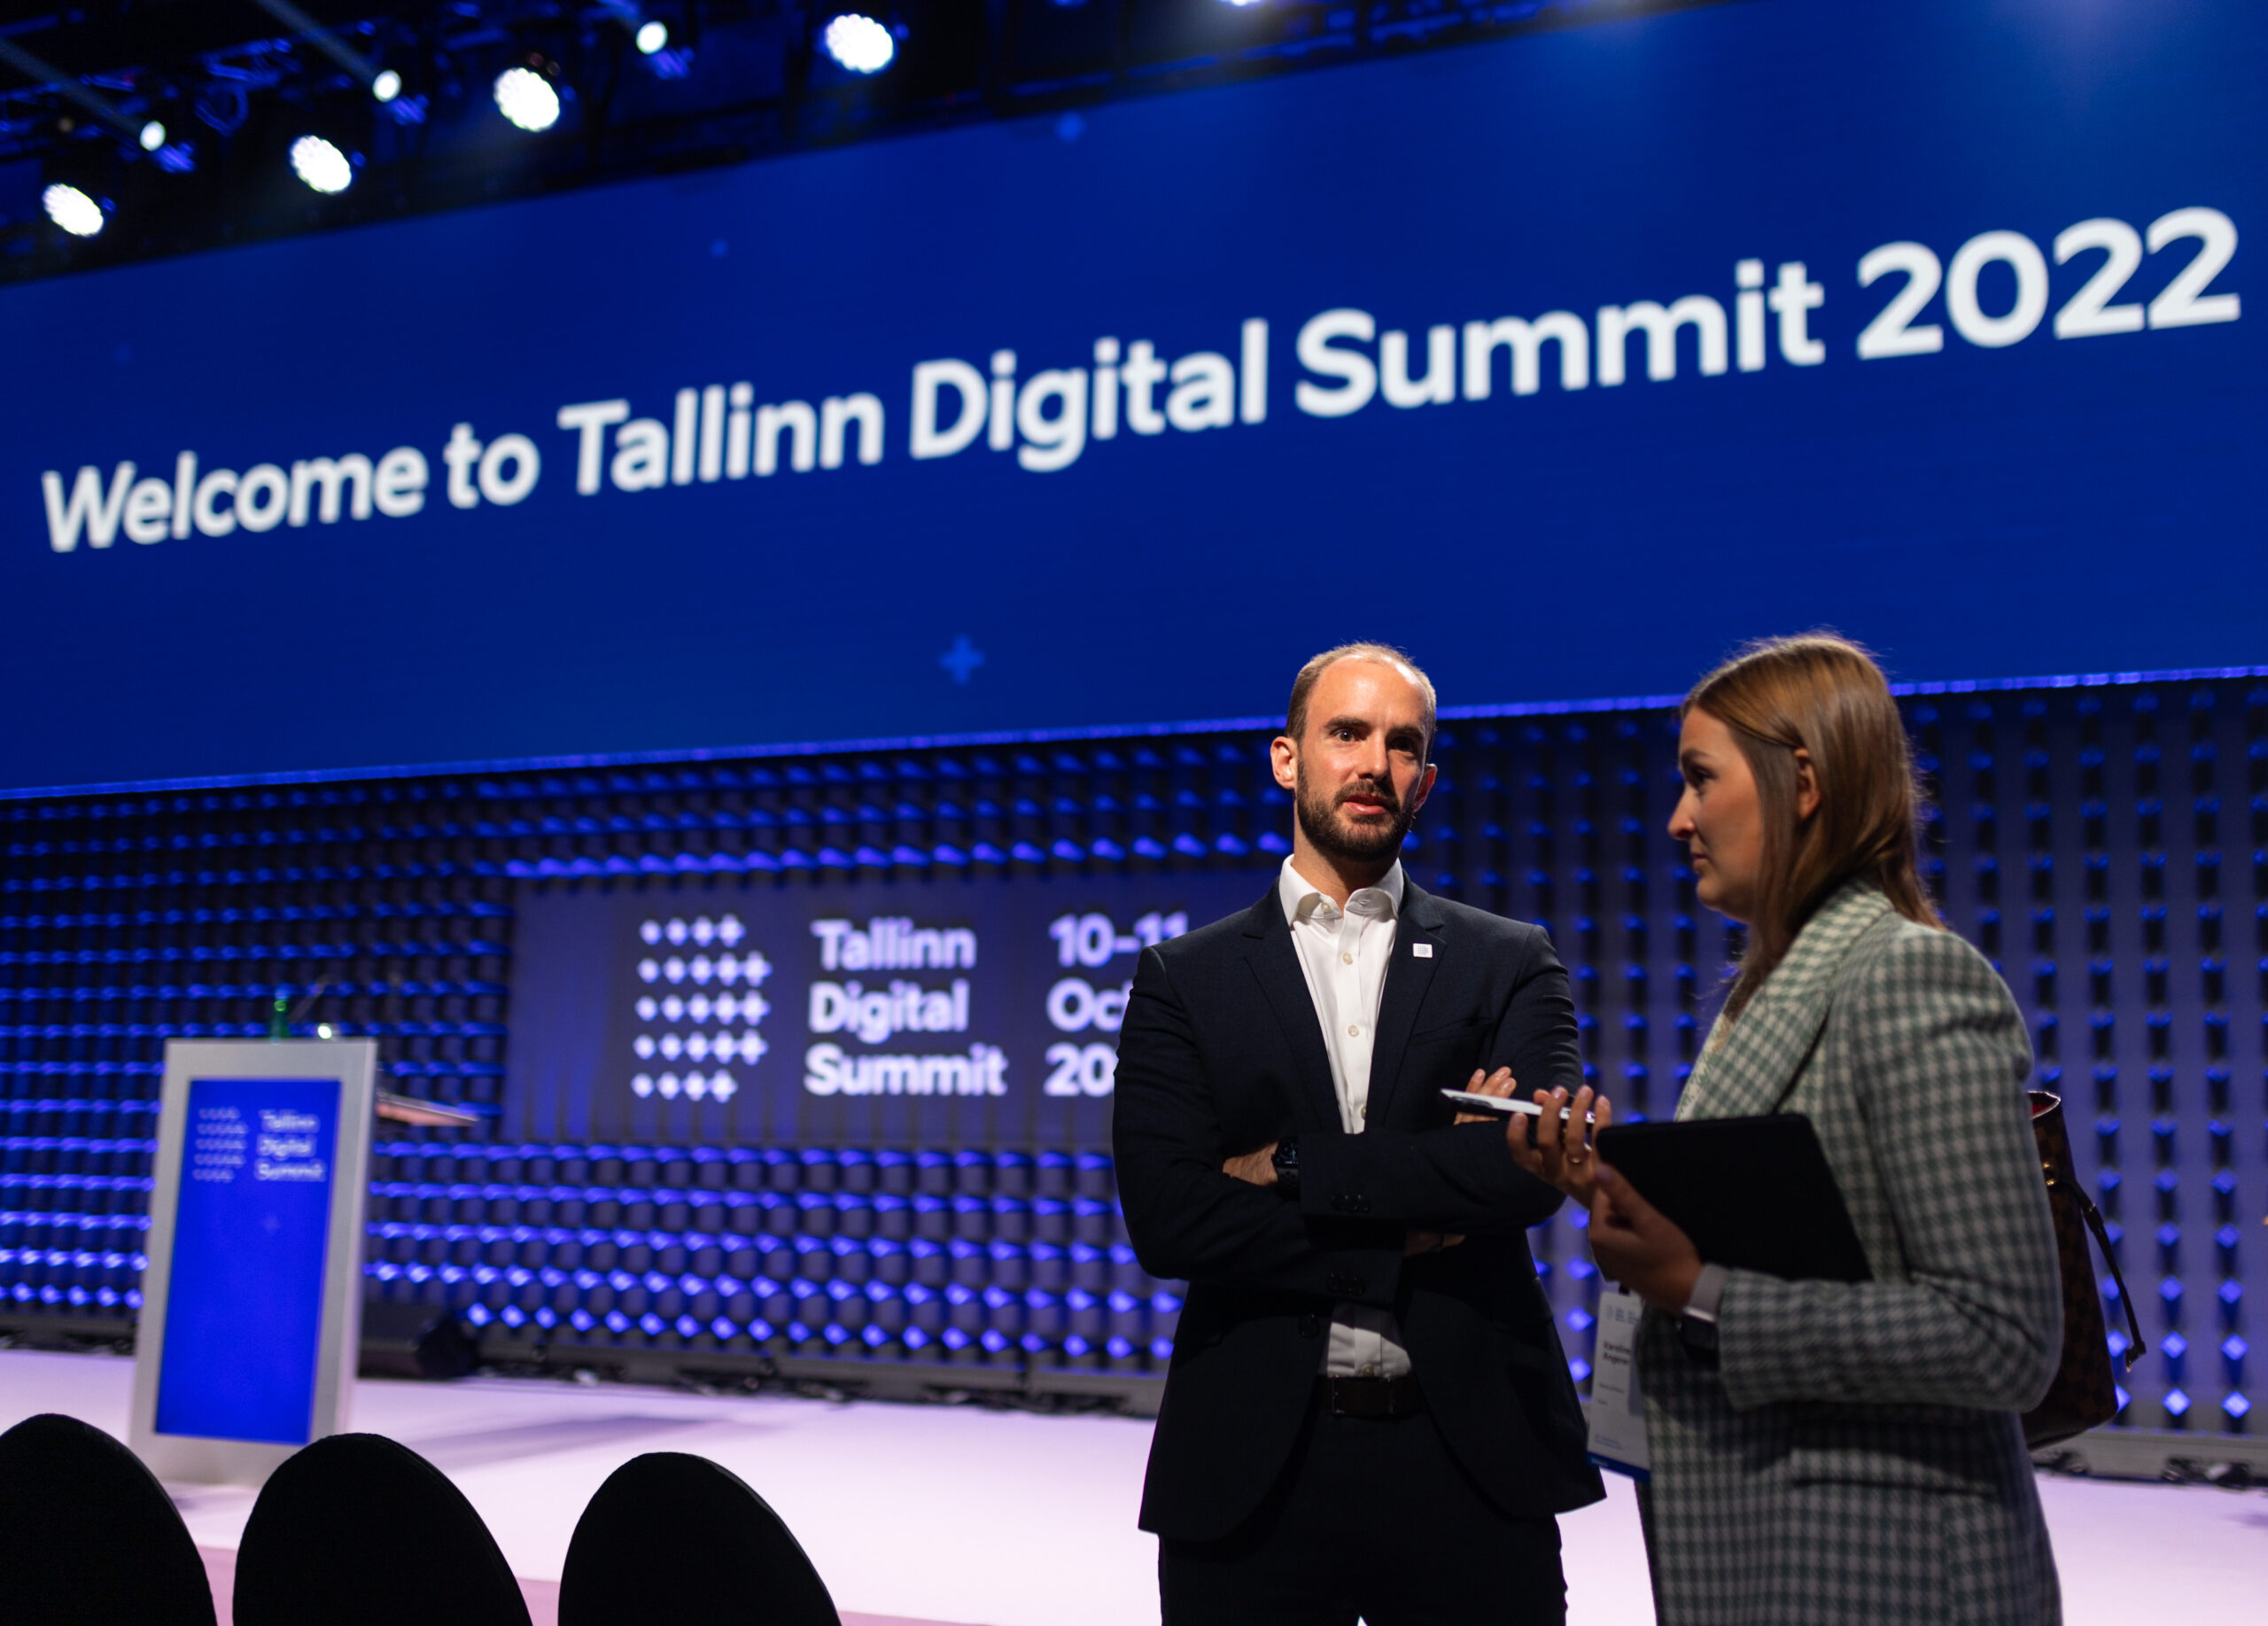 Staatssekretär für Digitalisierung Florian Tursky beim Digital Summit in Tallinn, in der Hauptstadt von Estland. Foto: BKA/Christopher Dunker